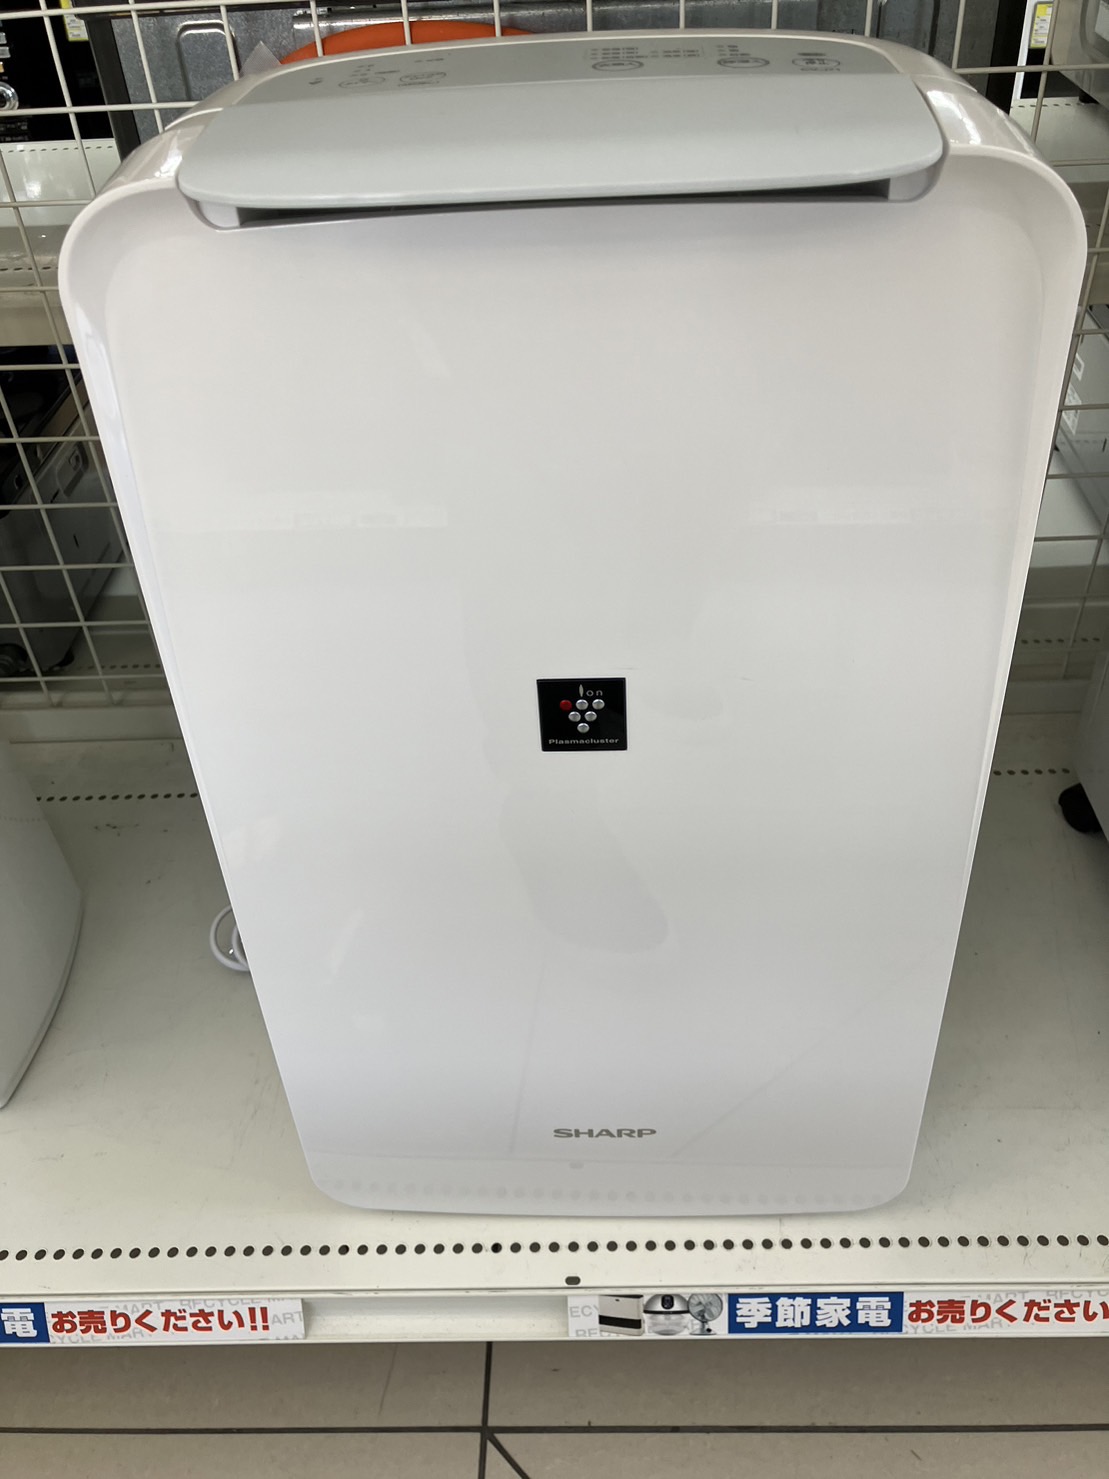 SHARP/除湿器/CV-J71-W/2019年製 お買取りさせて頂きました。 - リサイクルマートは現在冷蔵庫の買取、家具の買取強化中です！お気軽にお問い合わせください。